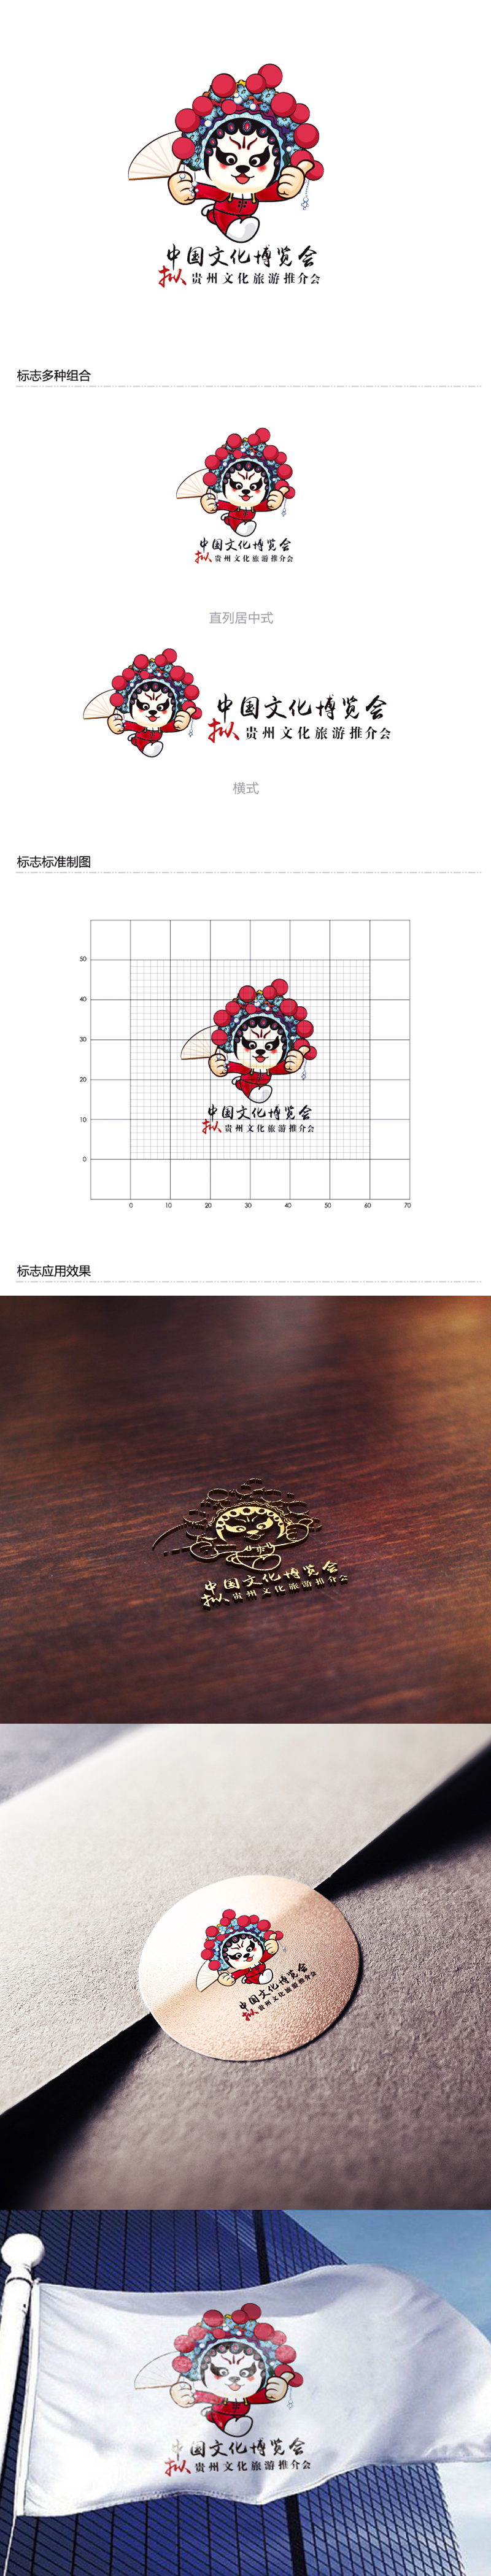 黄安悦的中国文化博览会拟贵州文化旅游推介会logo设计